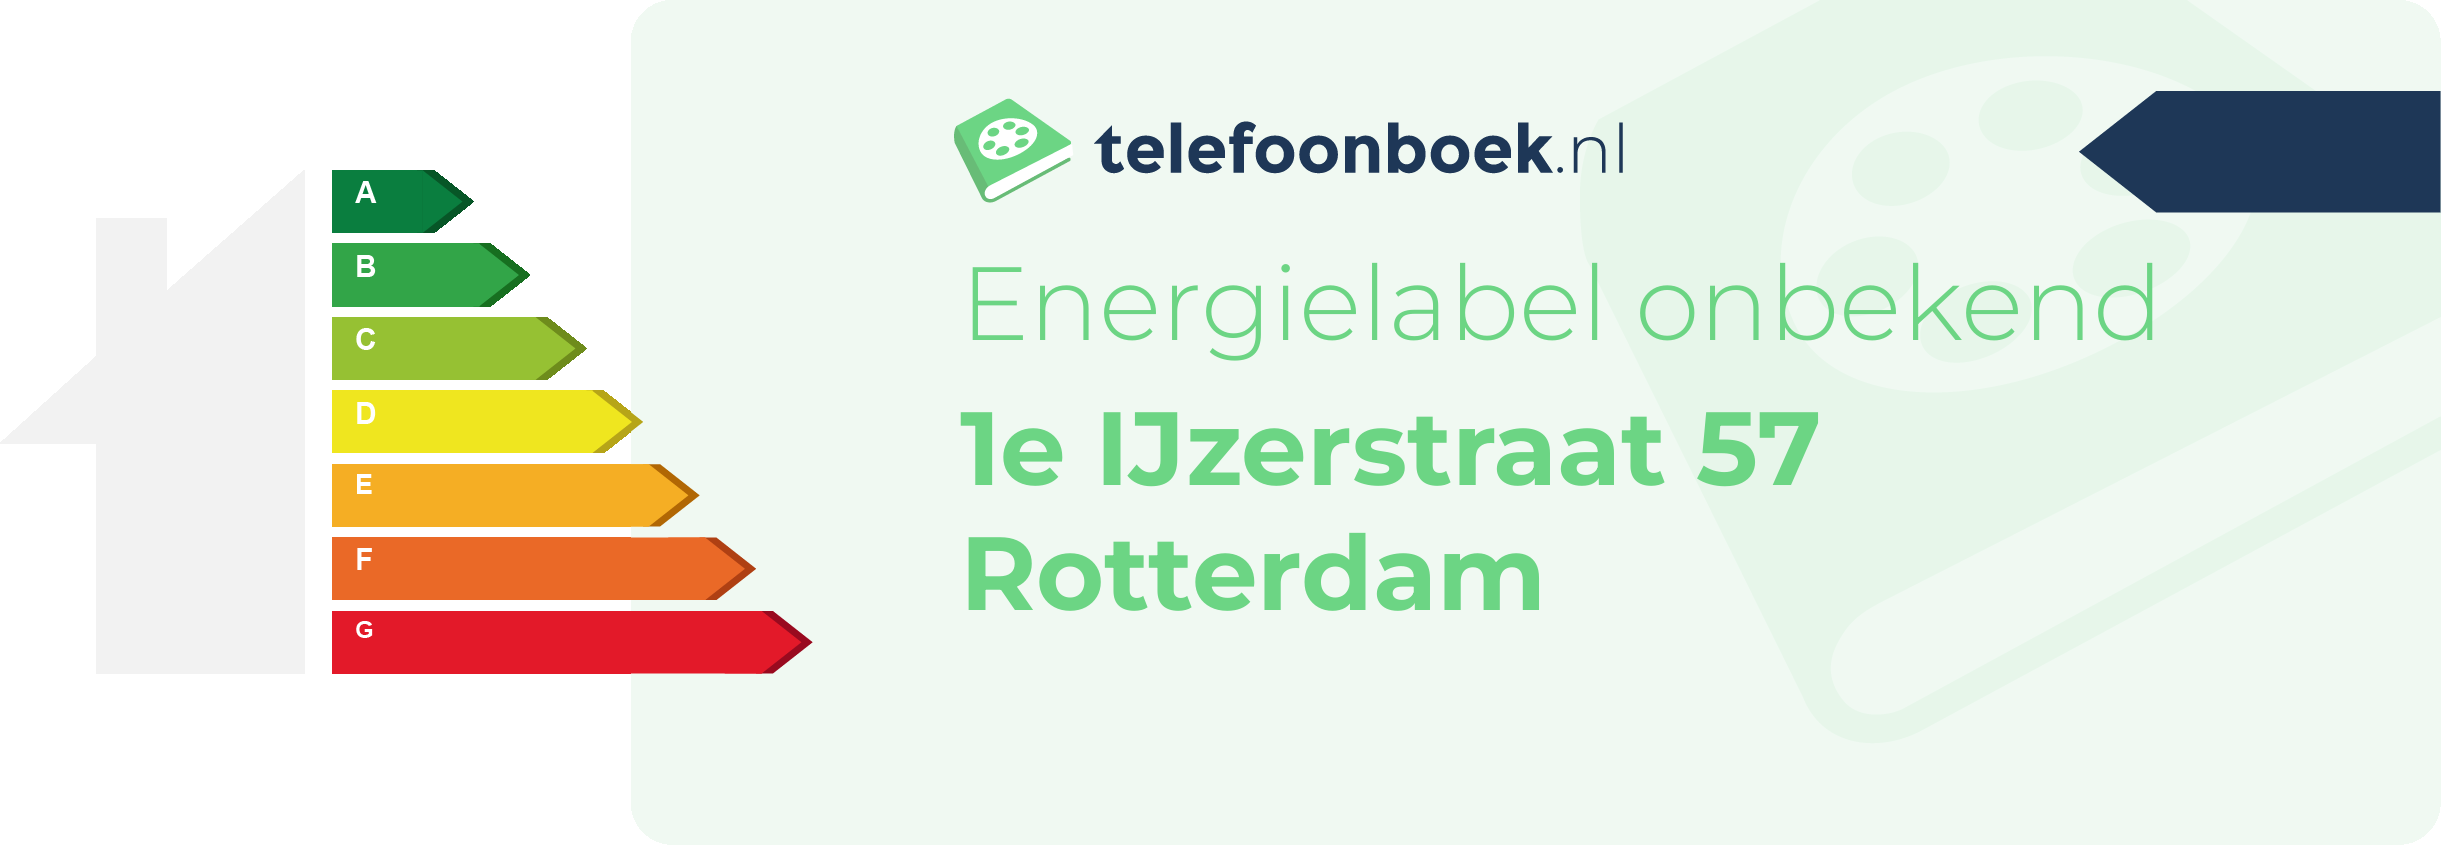 Energielabel 1e IJzerstraat 57 Rotterdam